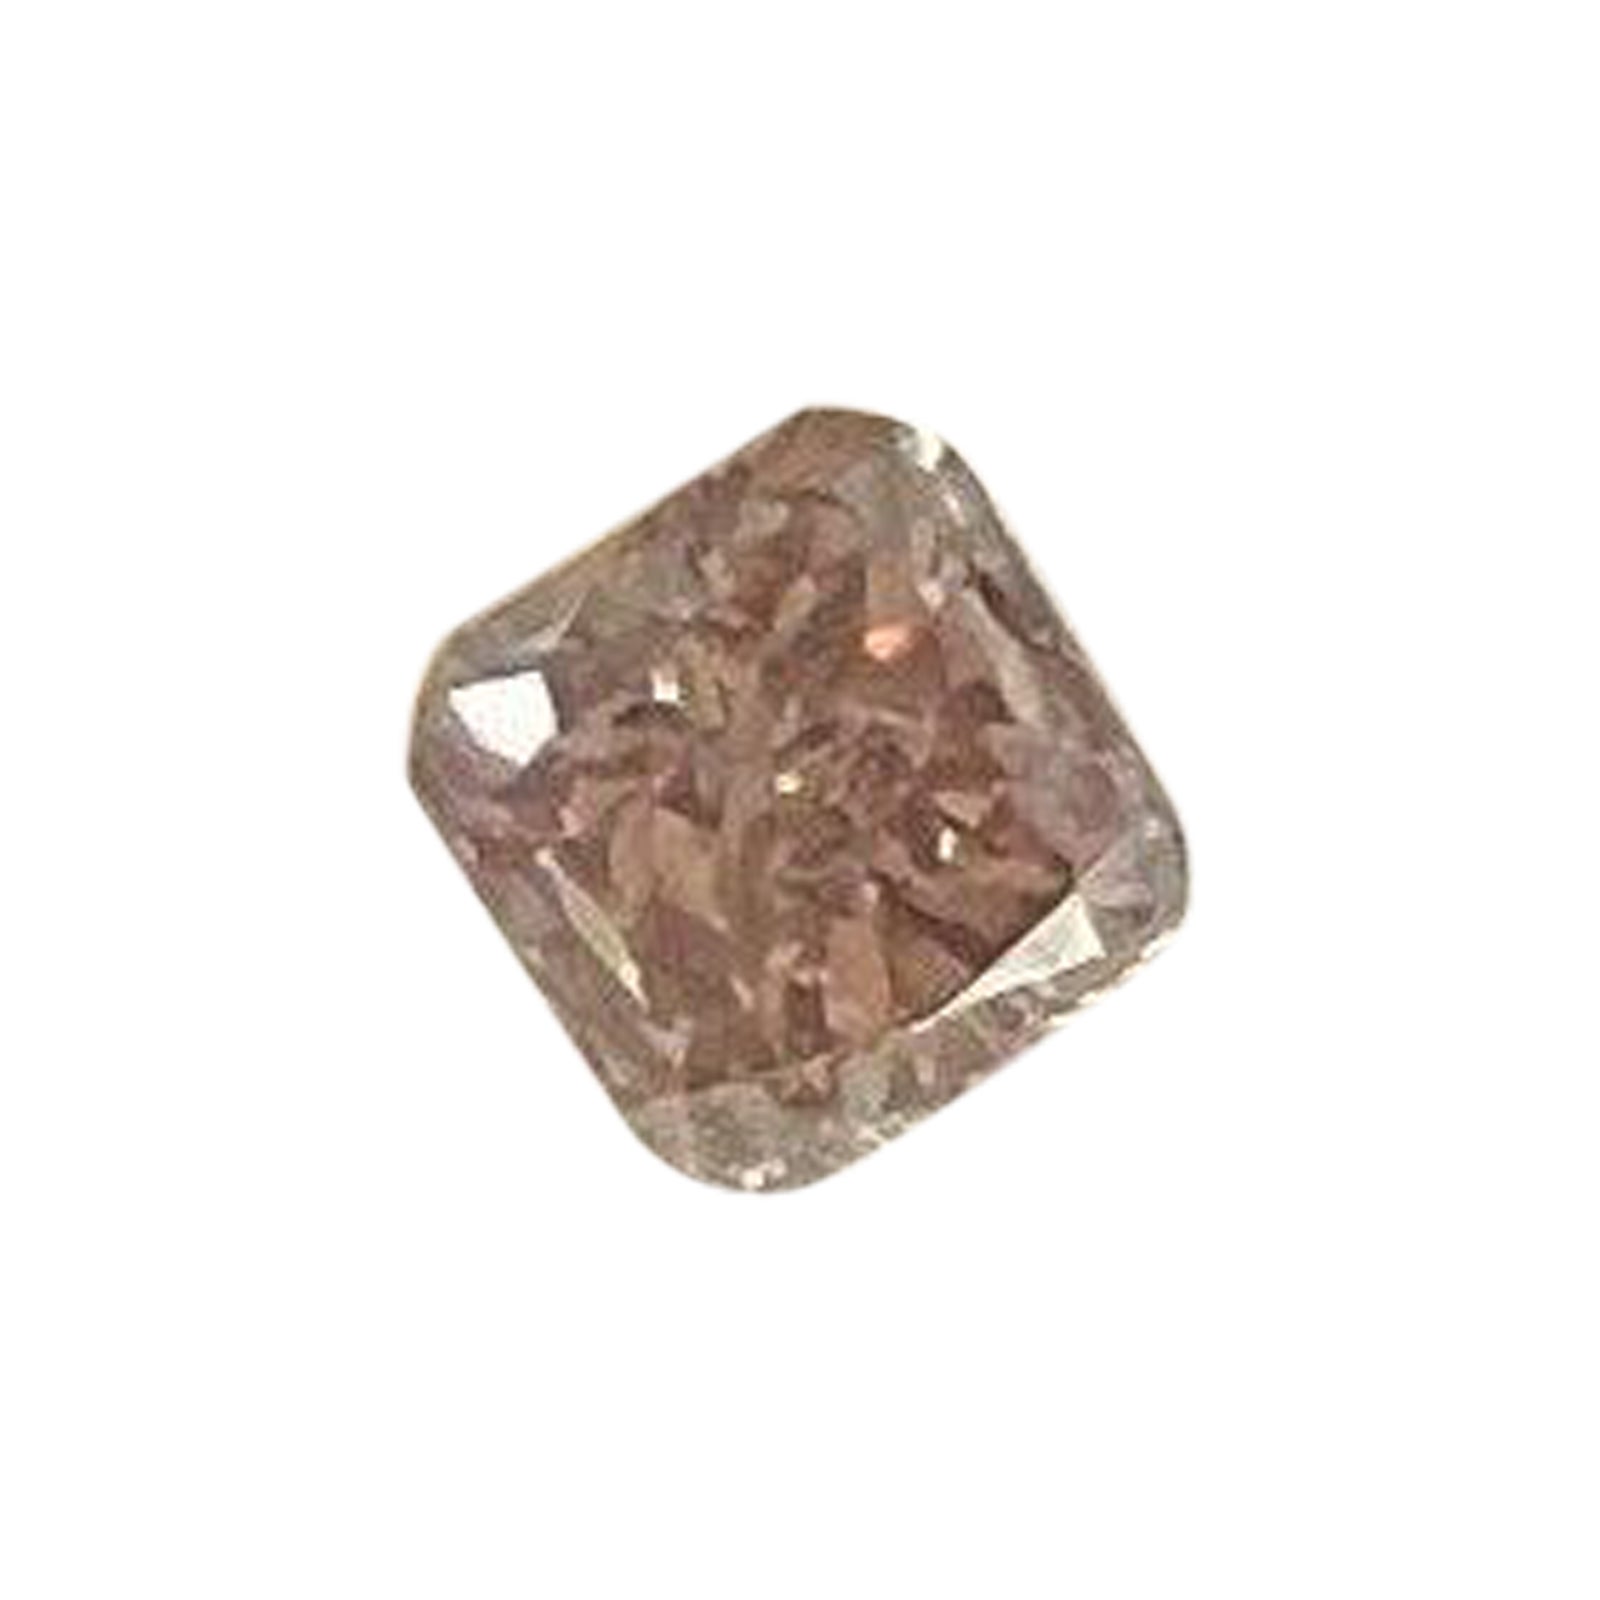 Diamant naturel non traité de couleur rose pourpre 0,39ct AIG Certified Blister SI1 Cut